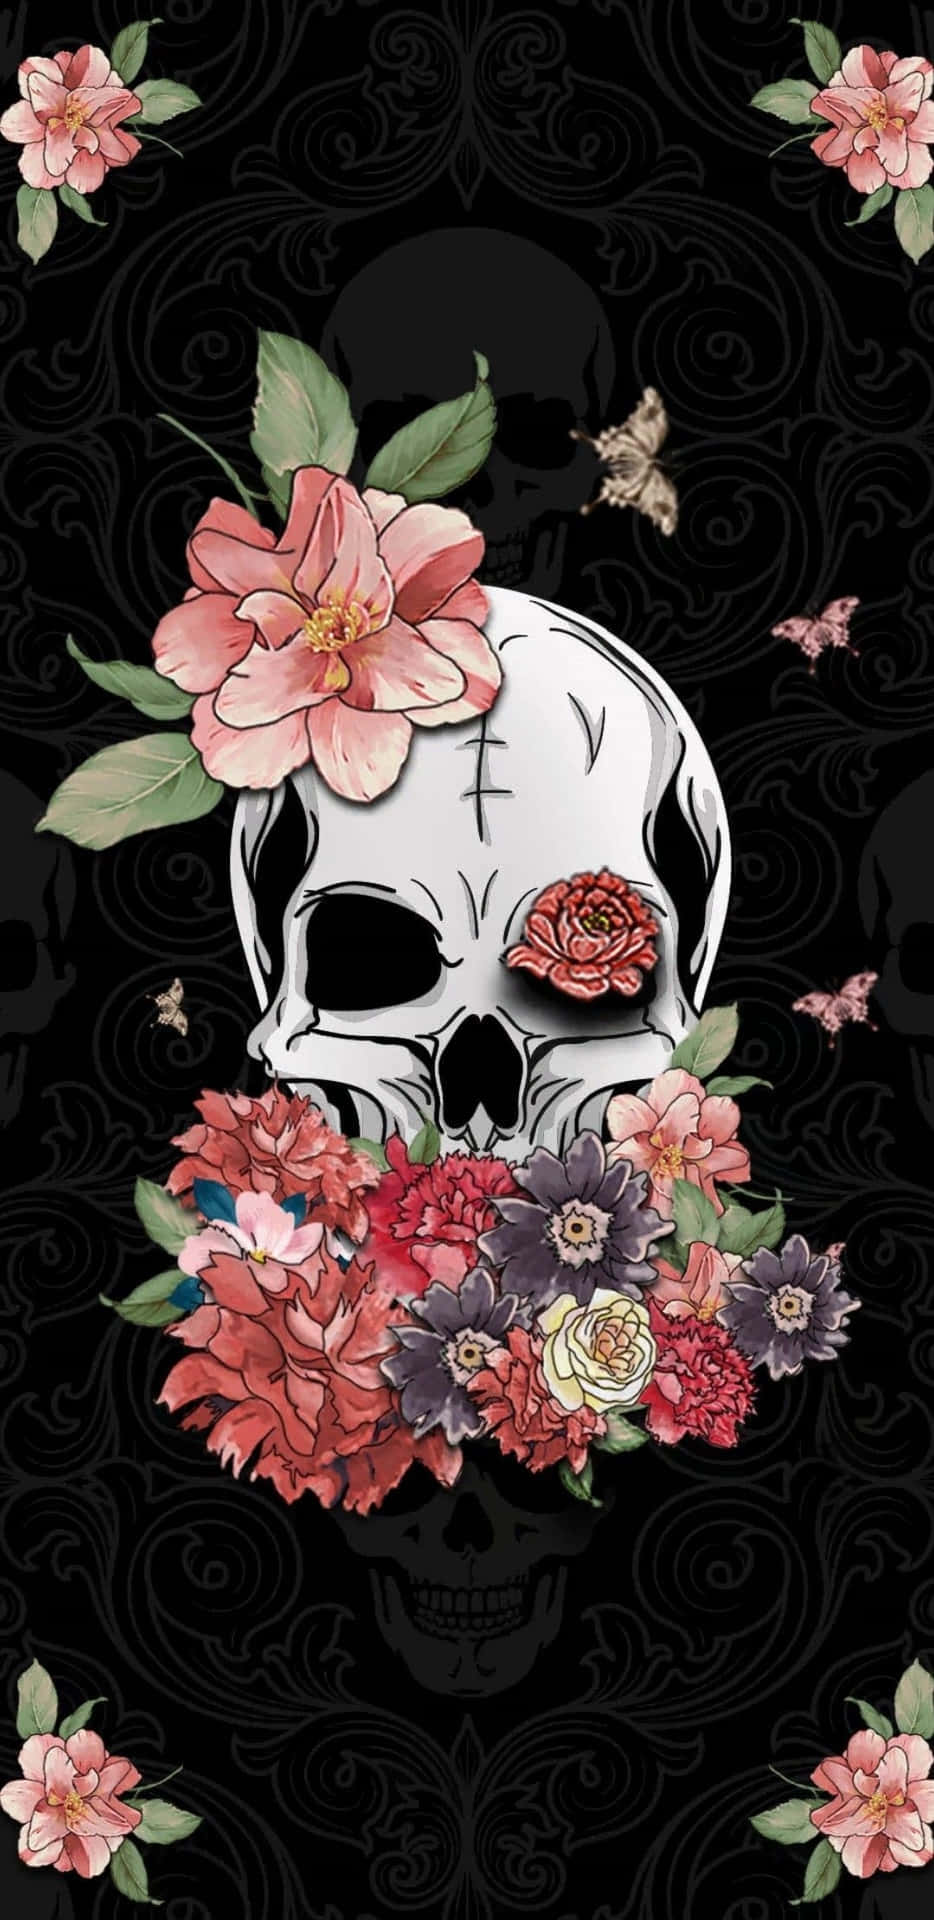 Floral_ Skull_ Aesthetic_ Wallpaper.jpg Wallpaper